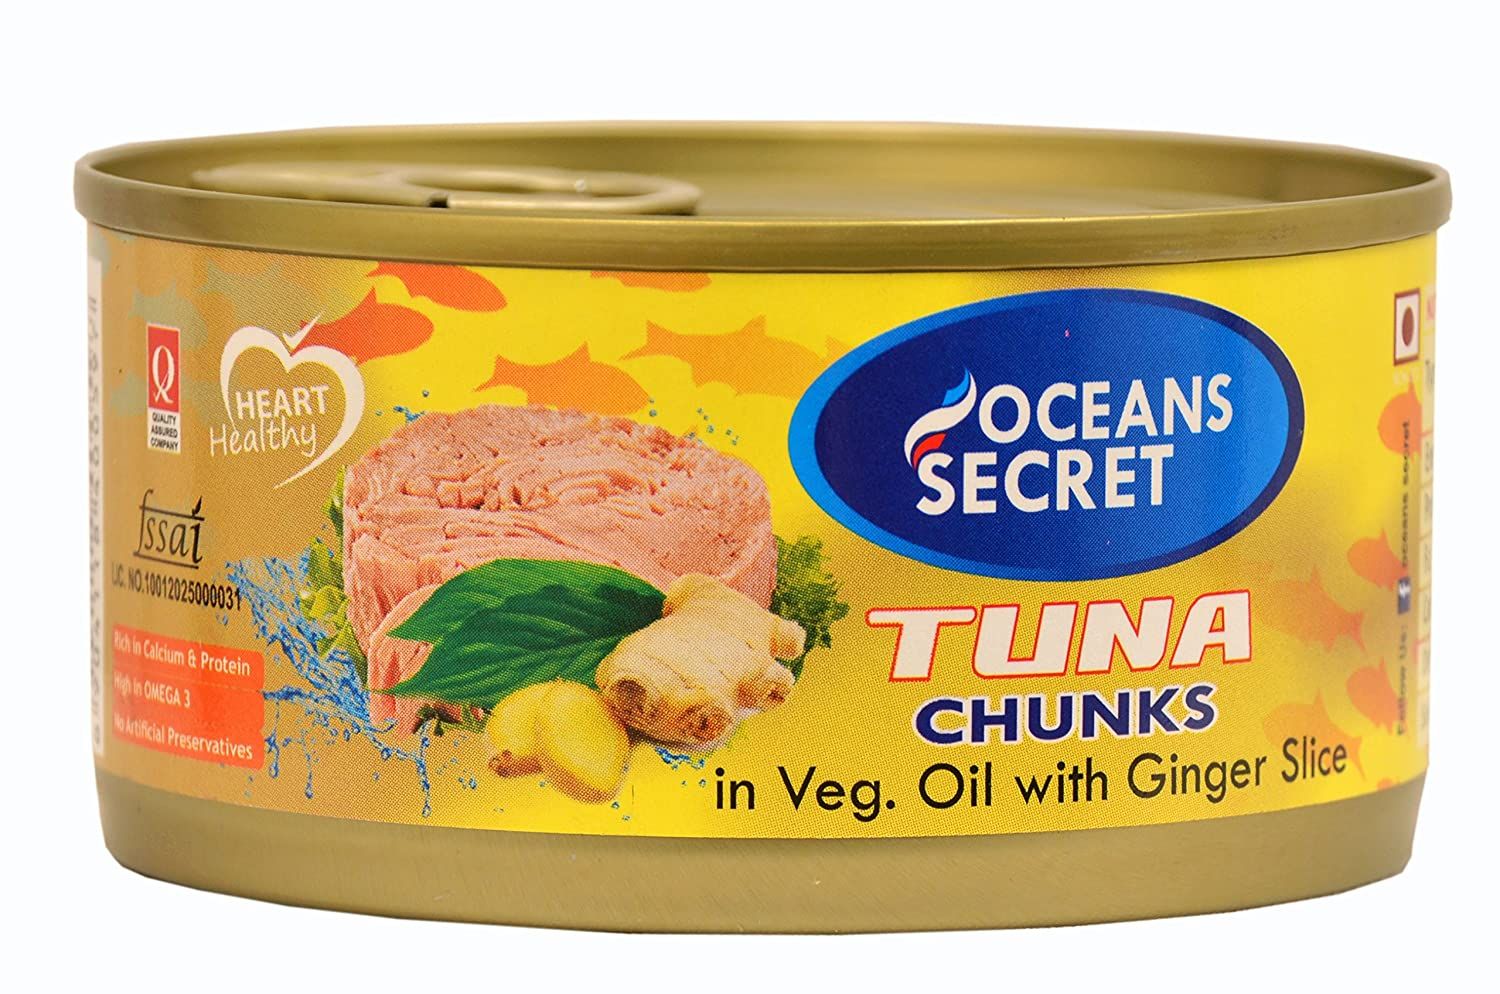 Ocean's Secret Tuna Chunks in Vegetable Oil With Ginger Slice Image